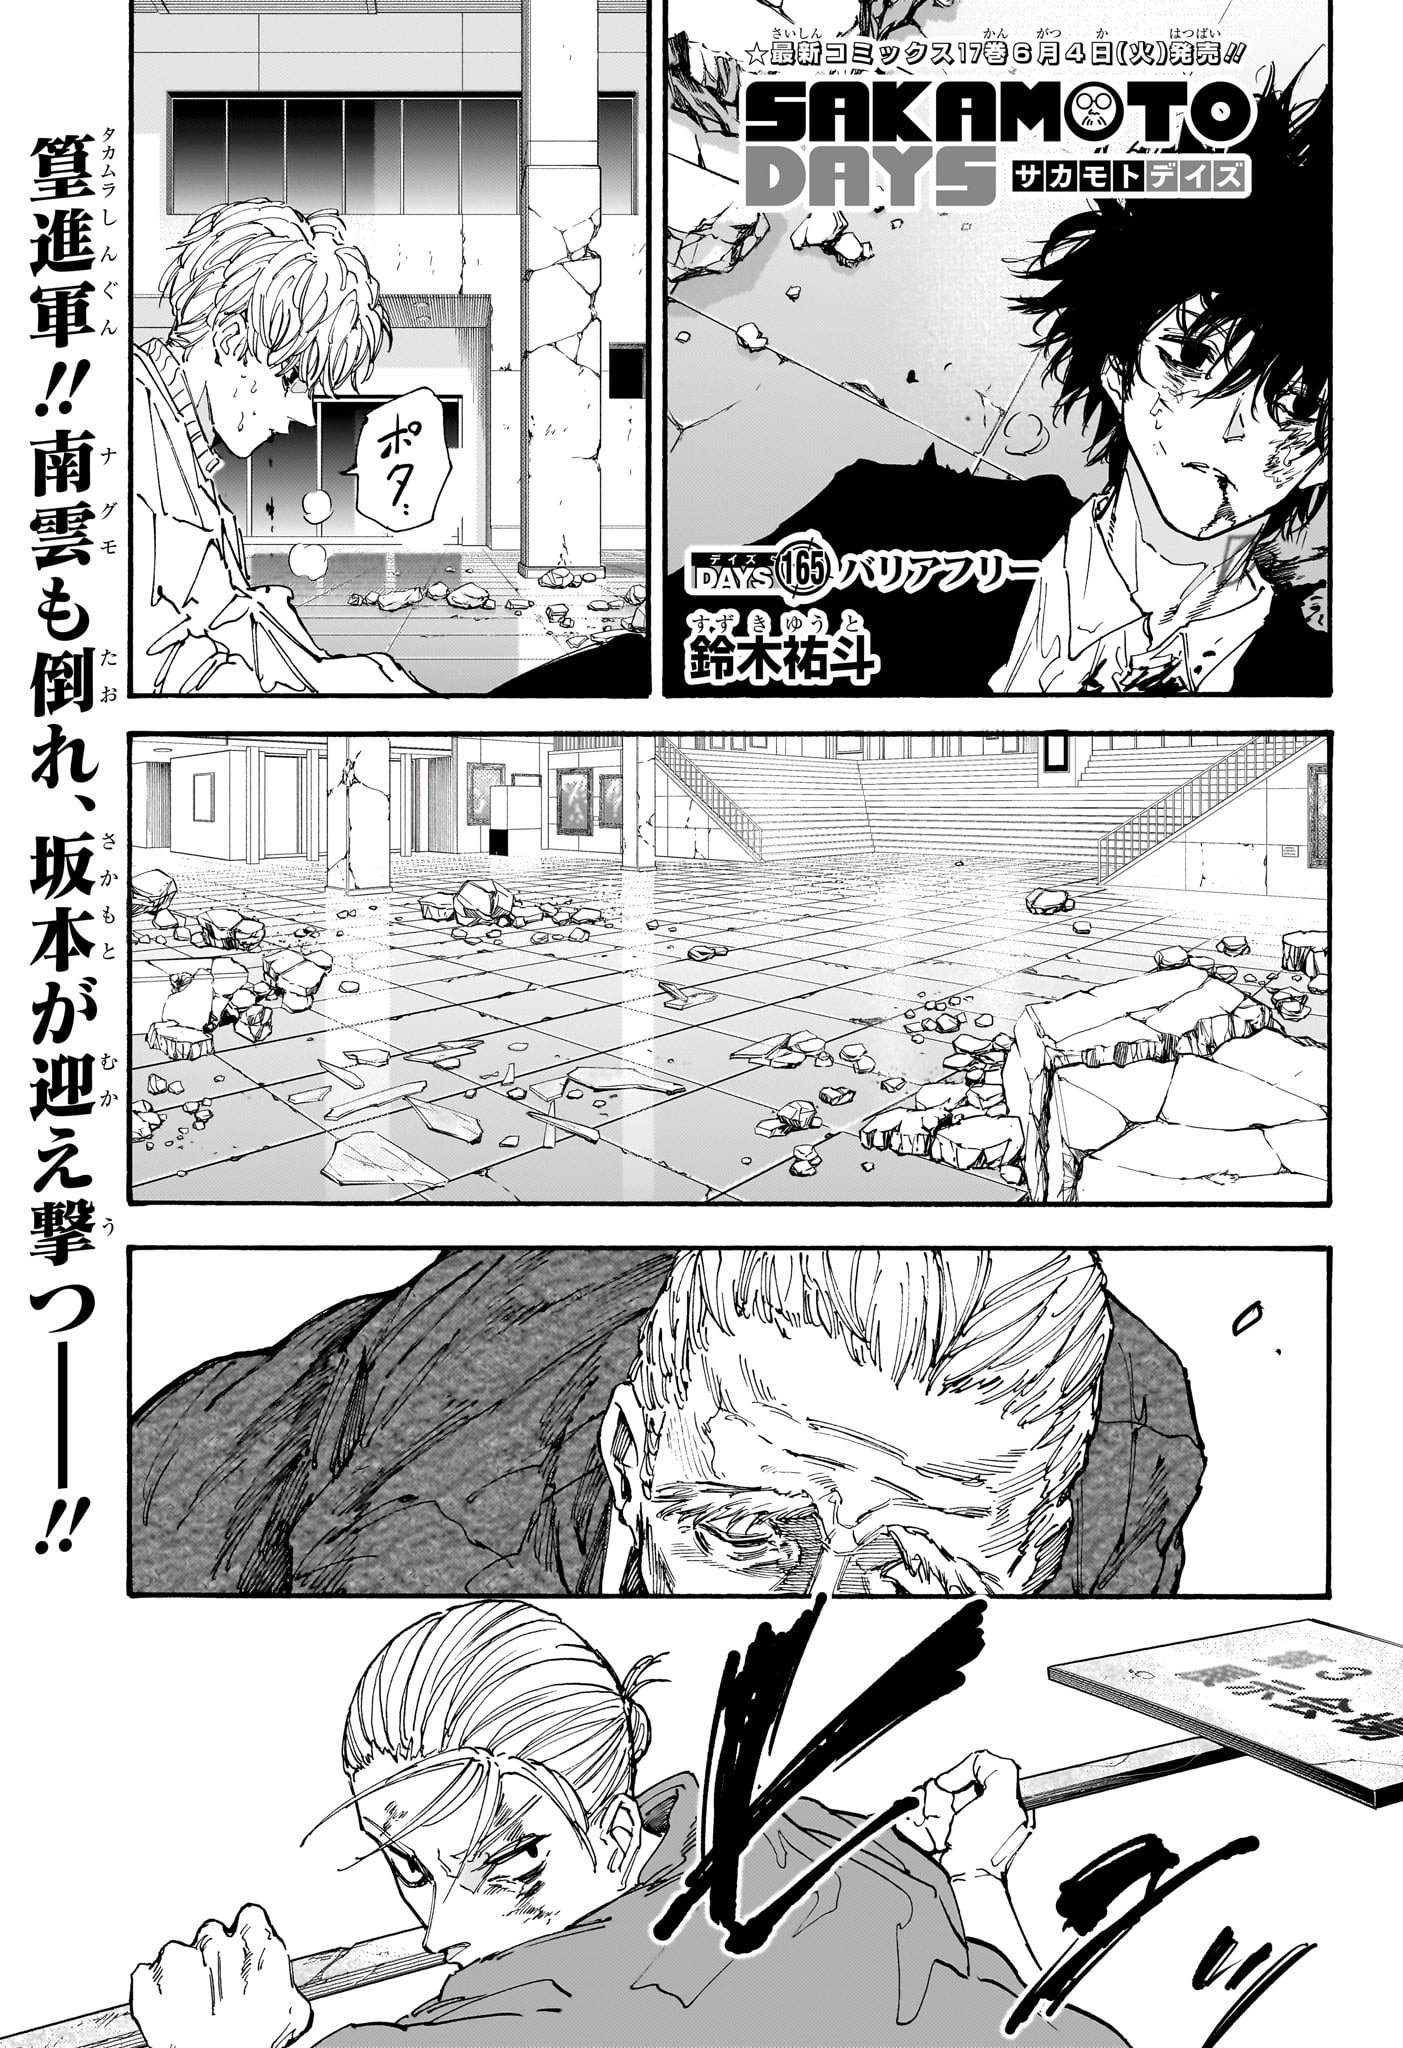 Sakamoto Days - Chapter 165 - Page 1